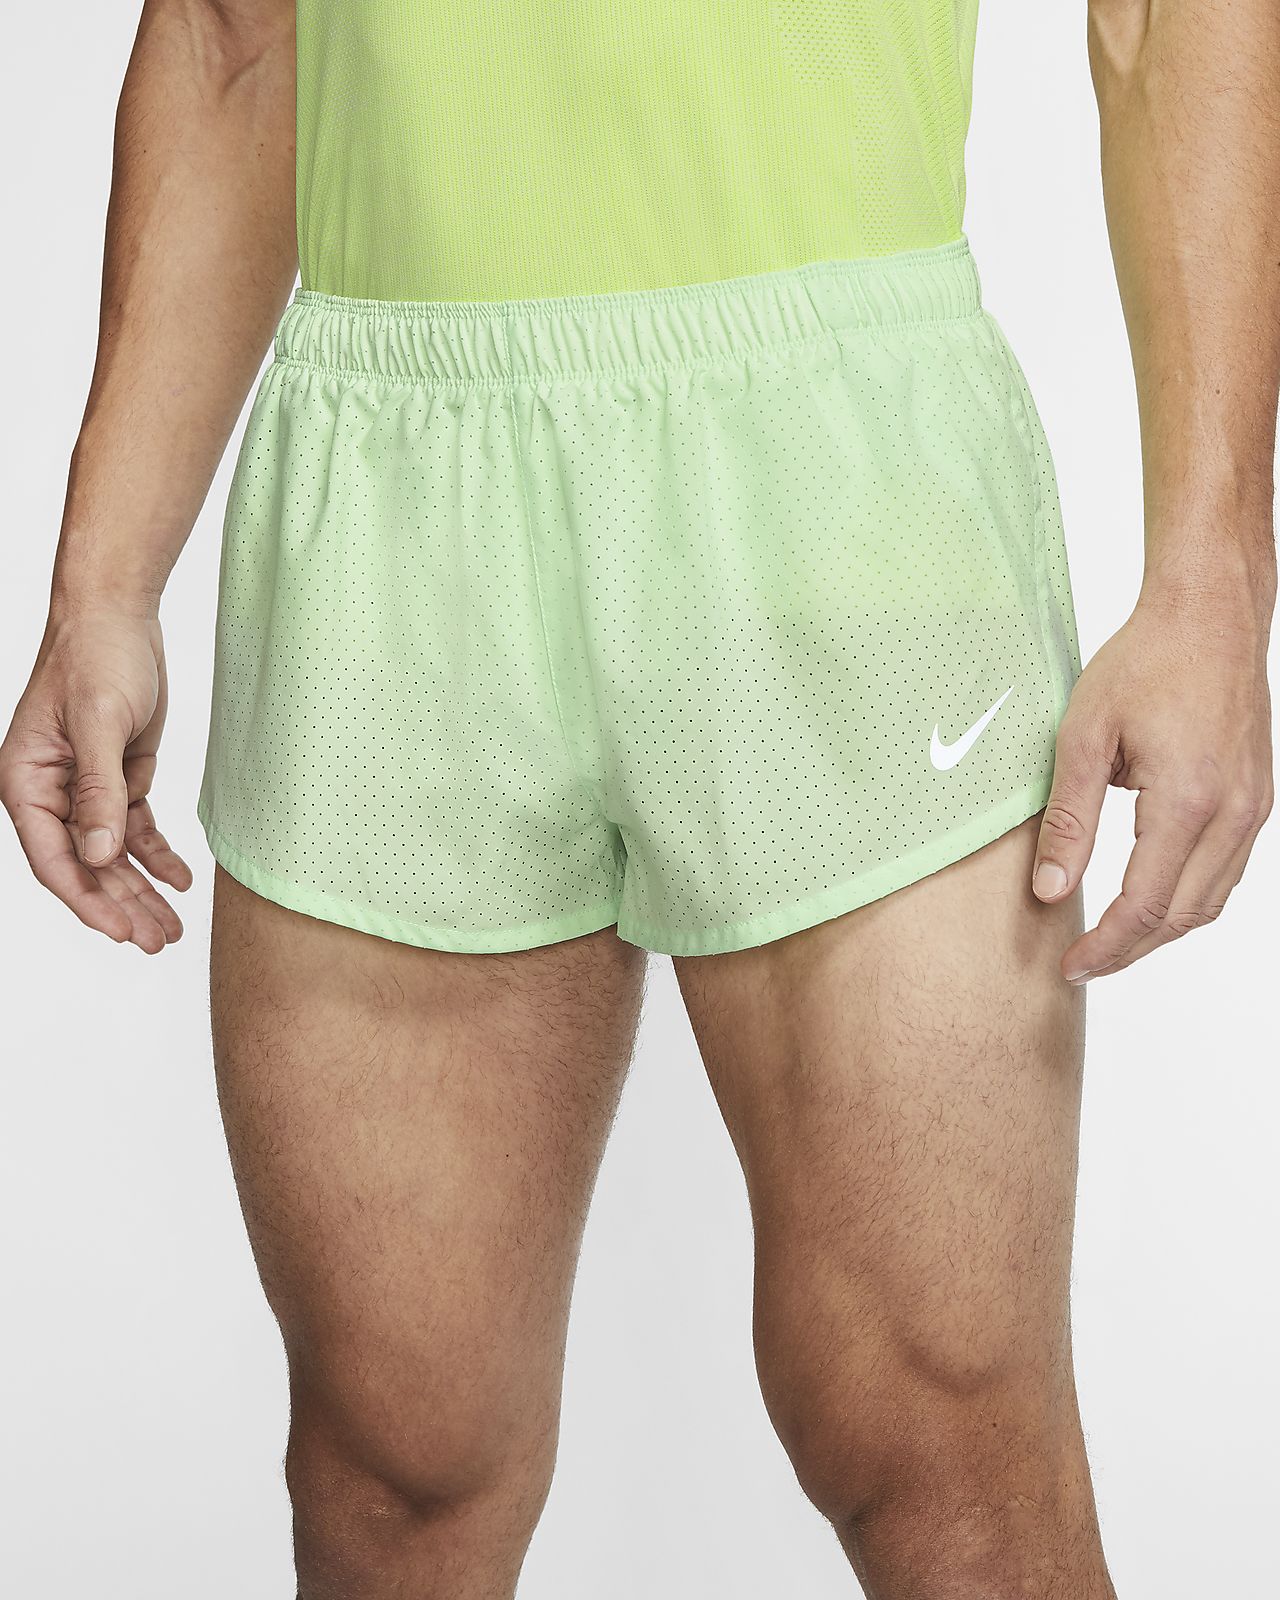 green nike shorts mens